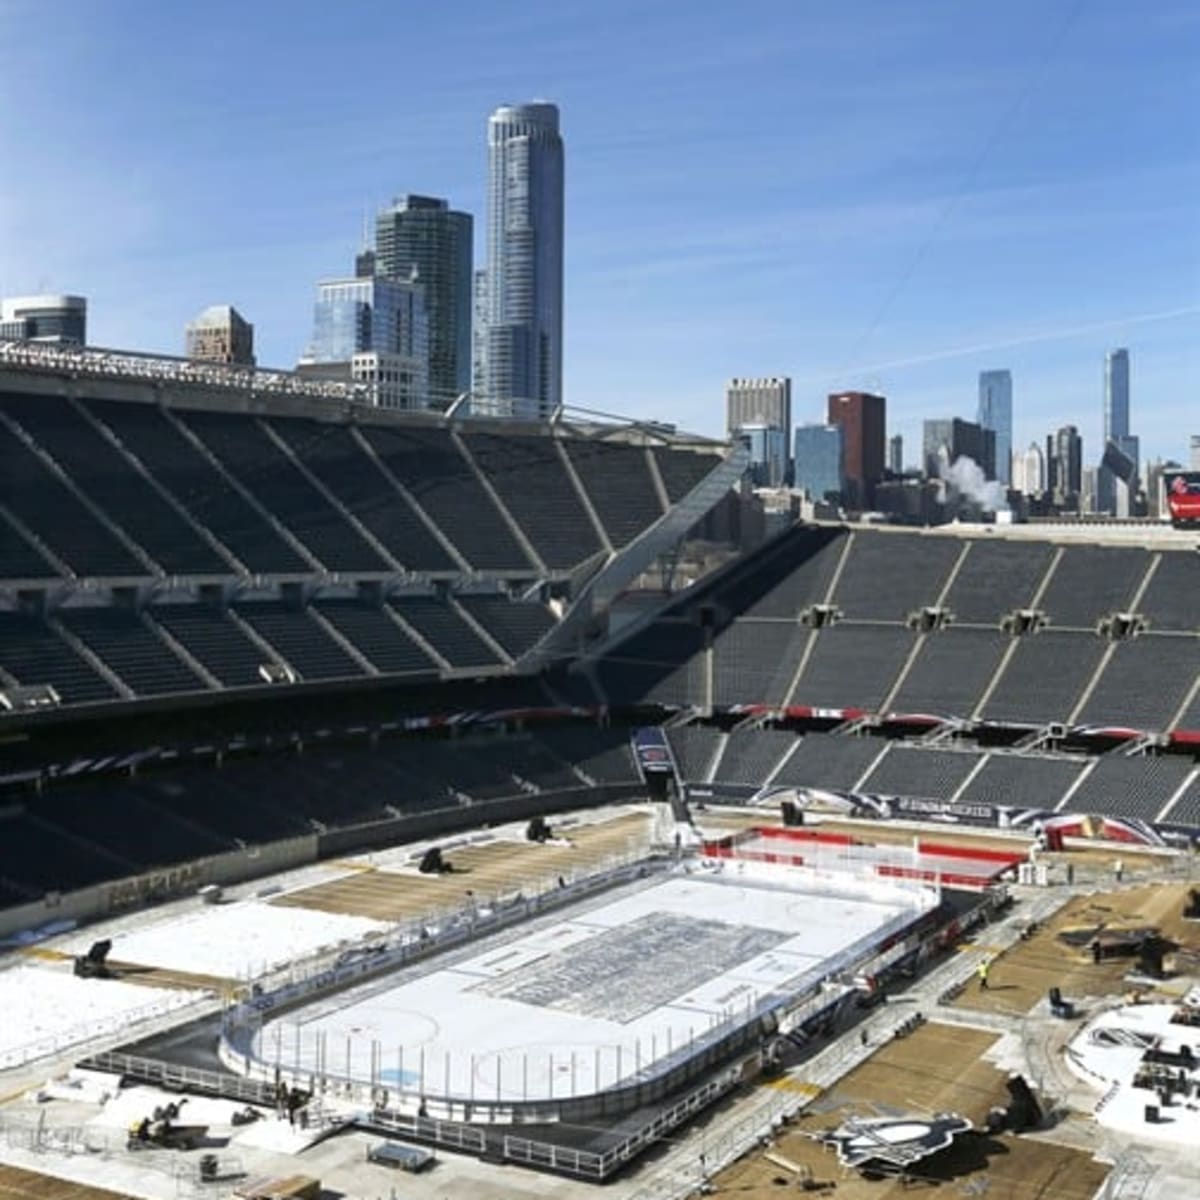 Familiar scenario, new stadium for the Blackhawks in Winter Classic